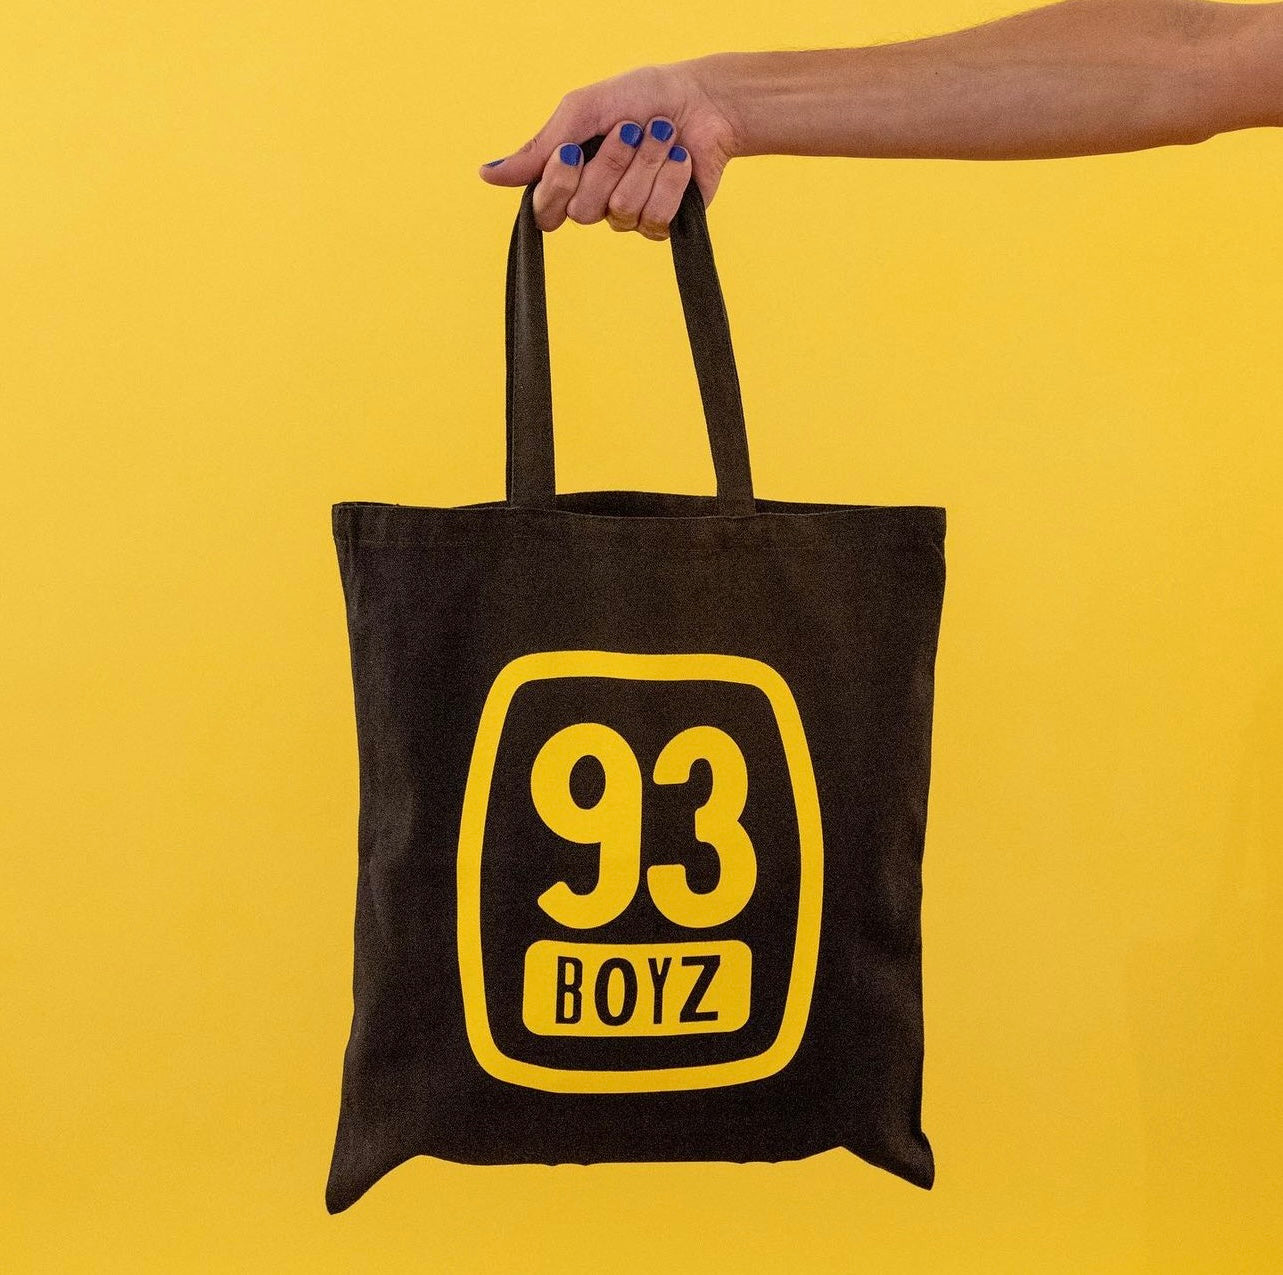 93 Boyz Tote Bag